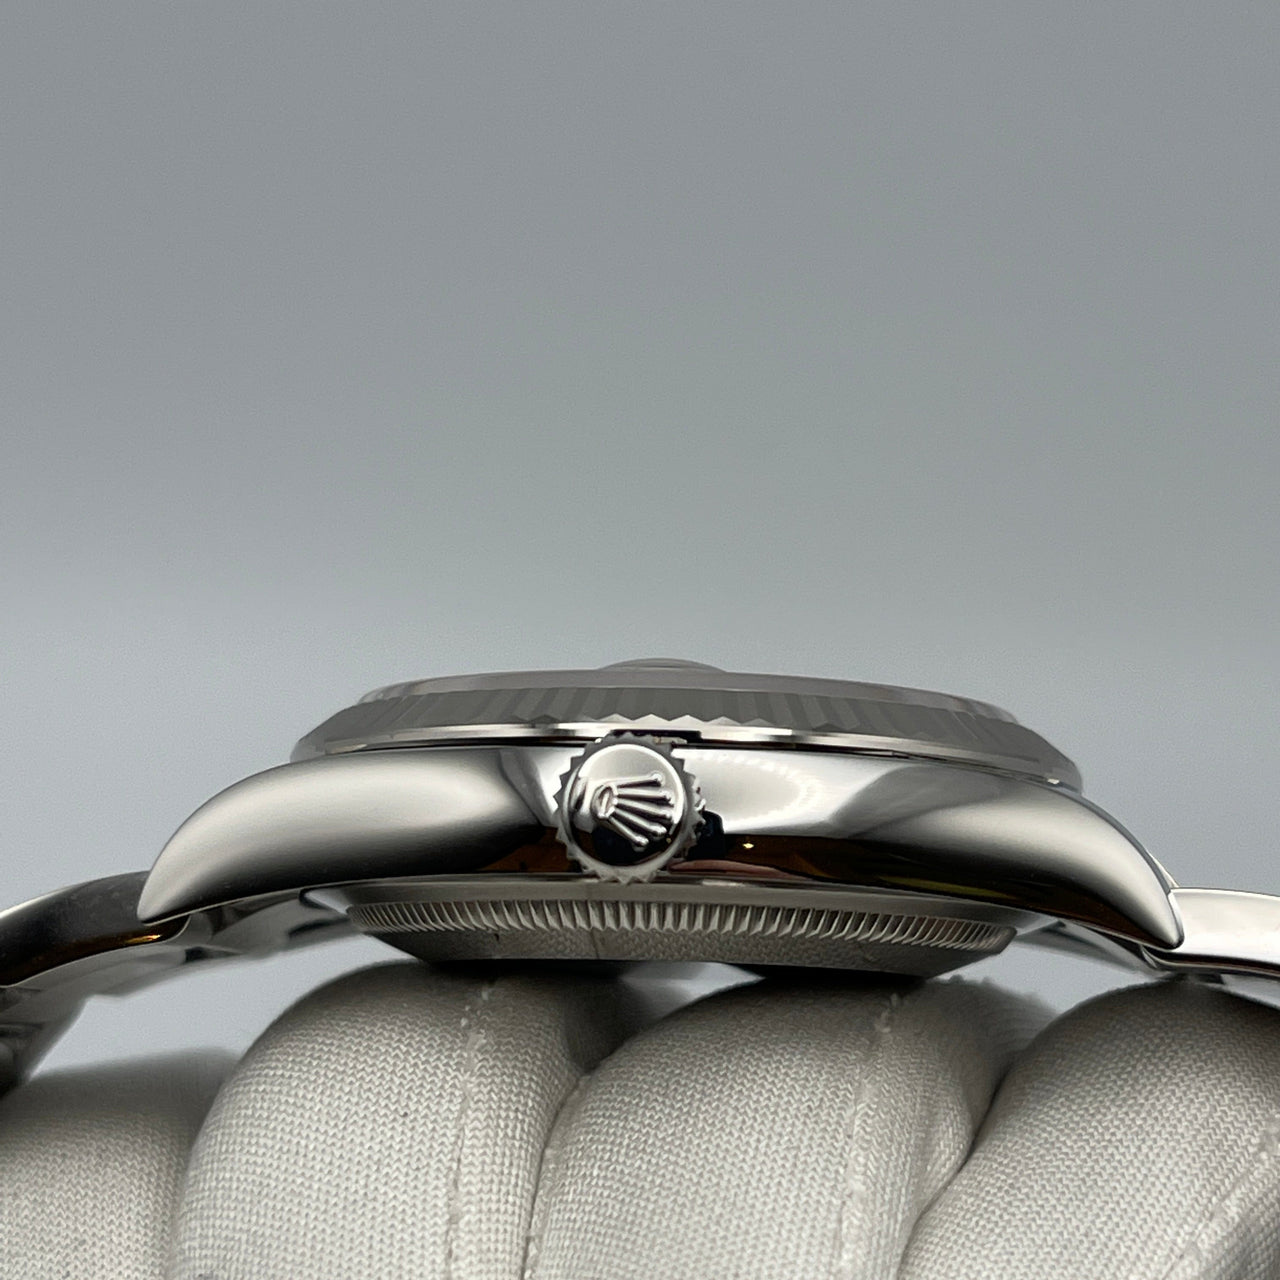 Luxury Watch Rolex Datejust 36 White Gold & Stainless Steel Blue Dial 126234 Wrist Aficionado